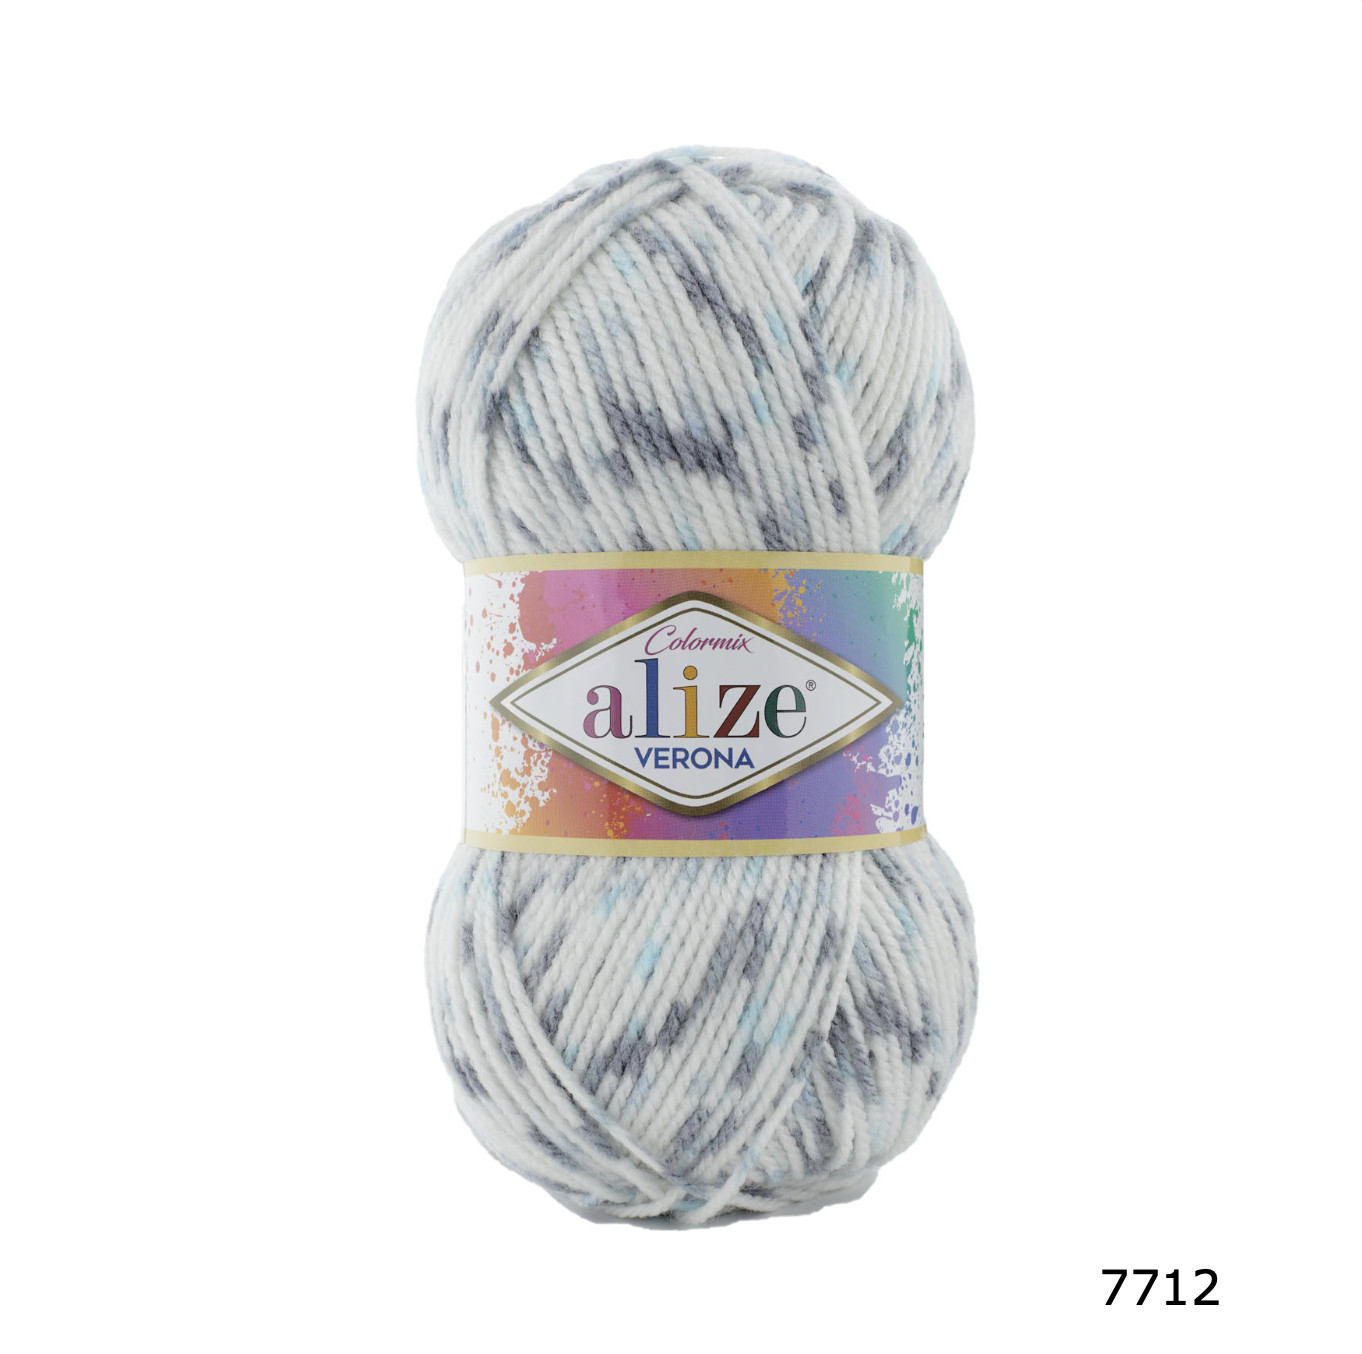 Cuộn len nhộm phẩy VERONA hãng Alize Yarns đan móc khăn, áo mùa đông cực đẹp